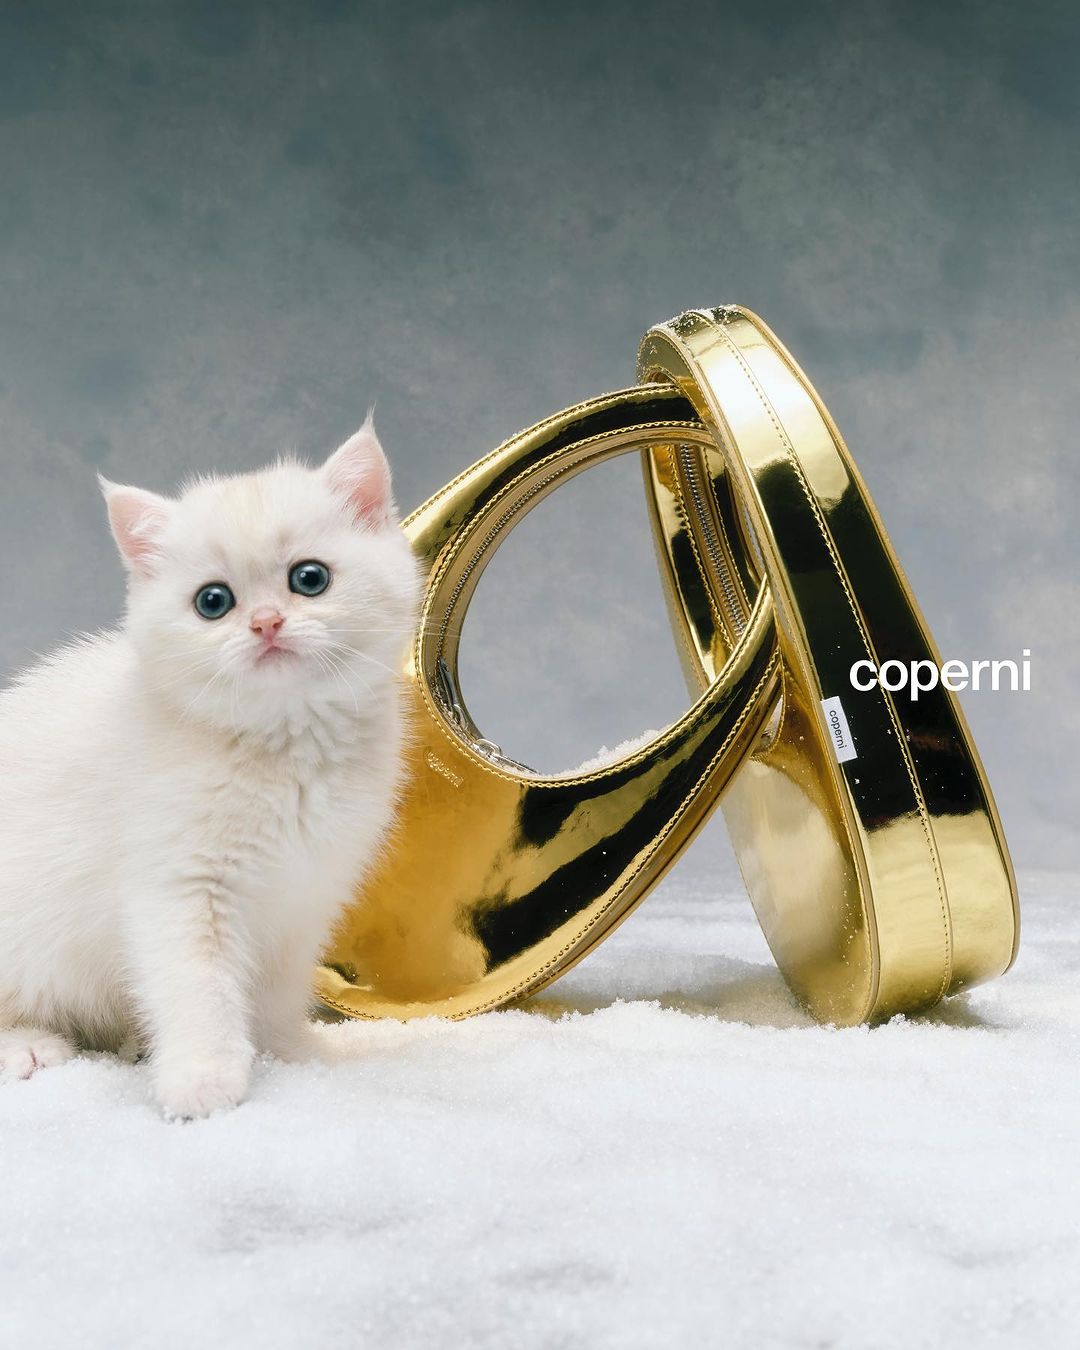 Ο Coperni δημιουργεί την πιο αξιολάτρευτη εορταστική καμπάνια με πρωταγωνίστριες γάτες